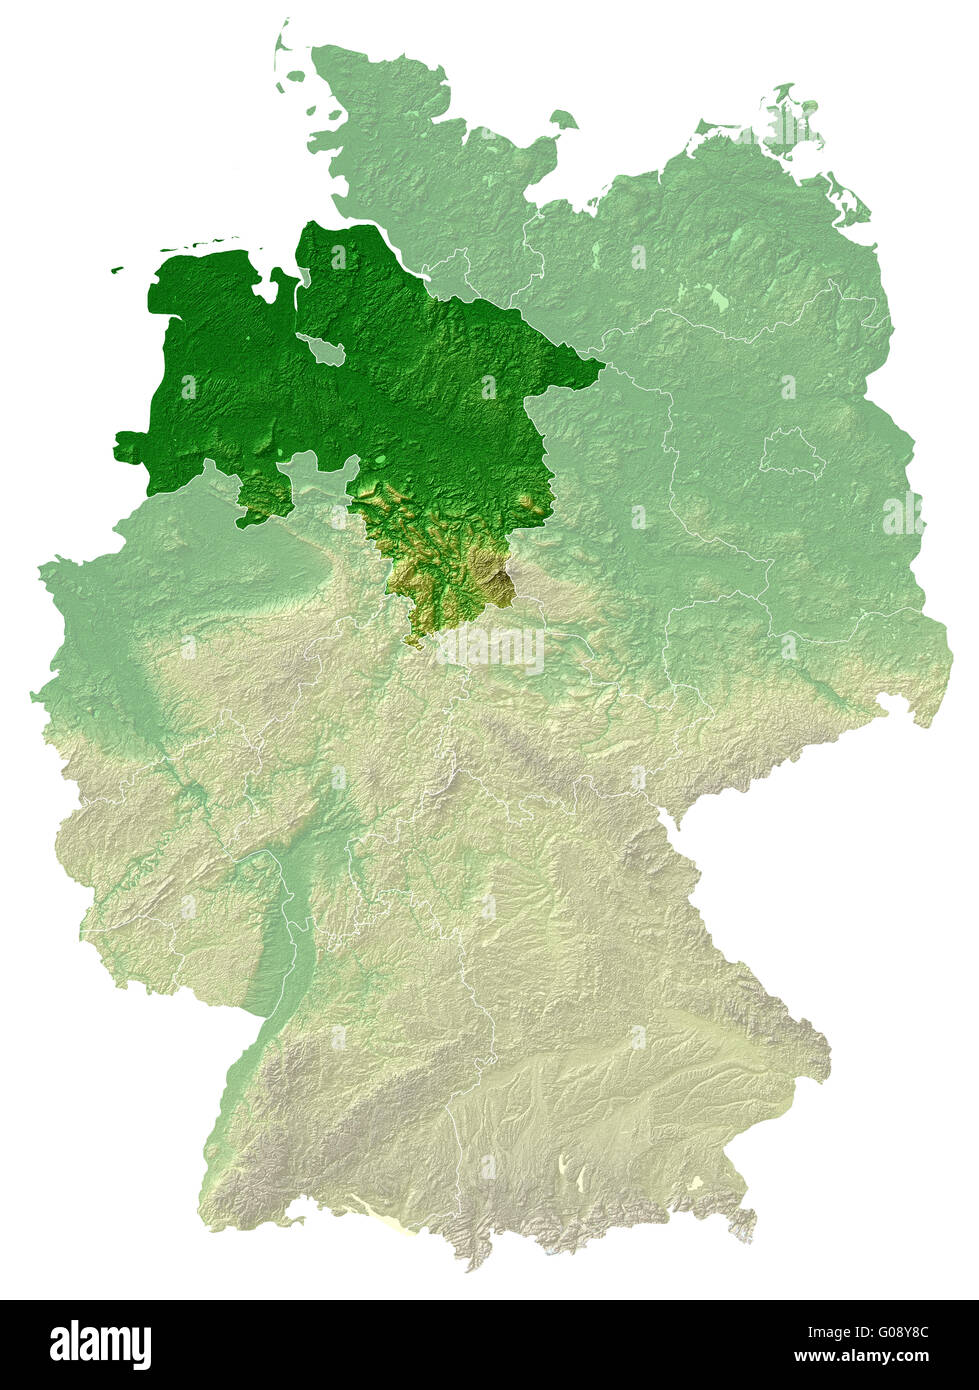 Basse-saxe - Allemagne Carte relief topographique Banque D'Images